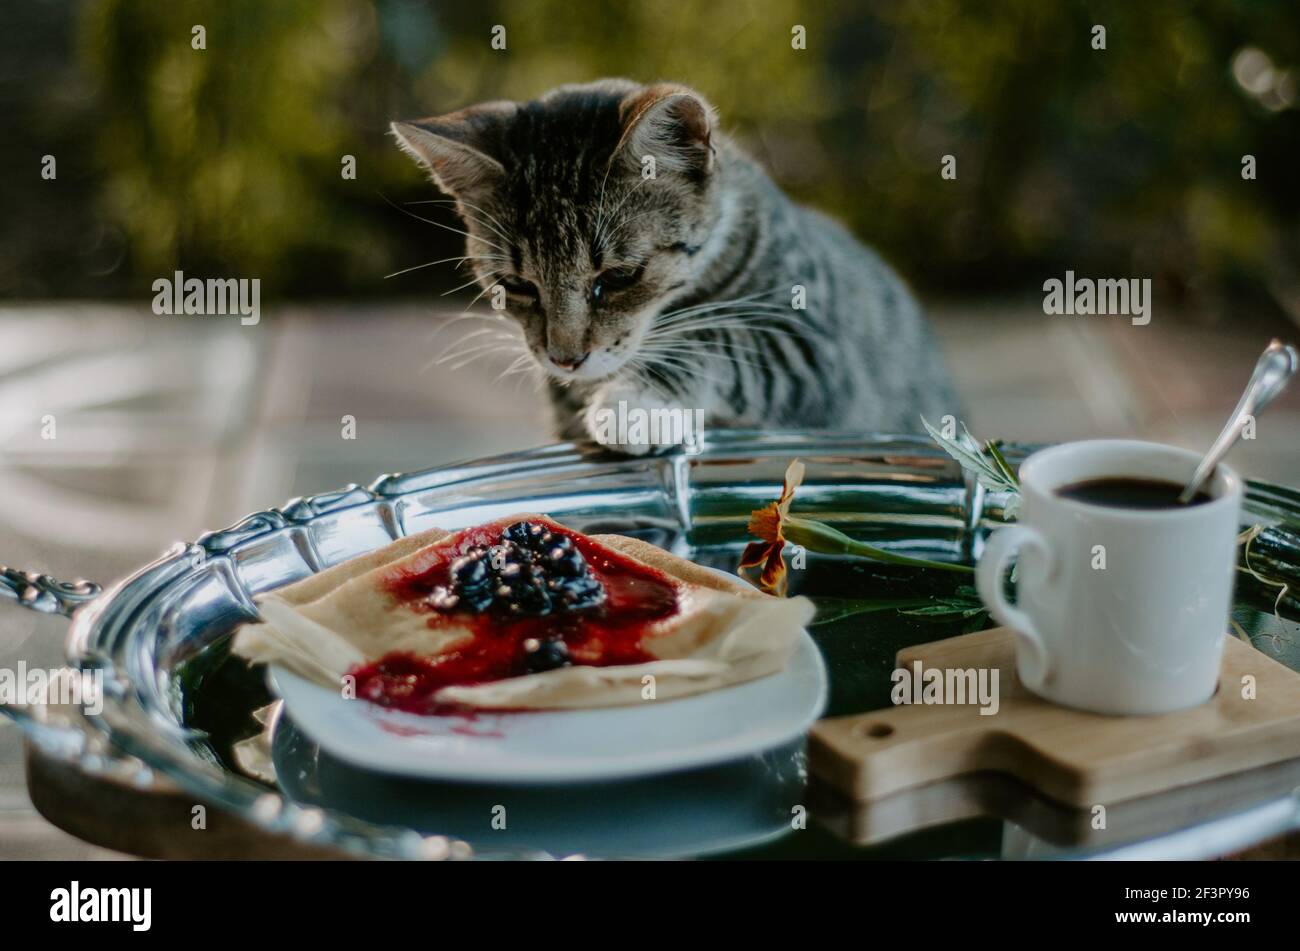 Un chat domestique se moque d'une assiette de crêpes avec de la confiture de mûres sur un plateau argenté. Concept: Moments drôles avec les animaux de compagnie Banque D'Images